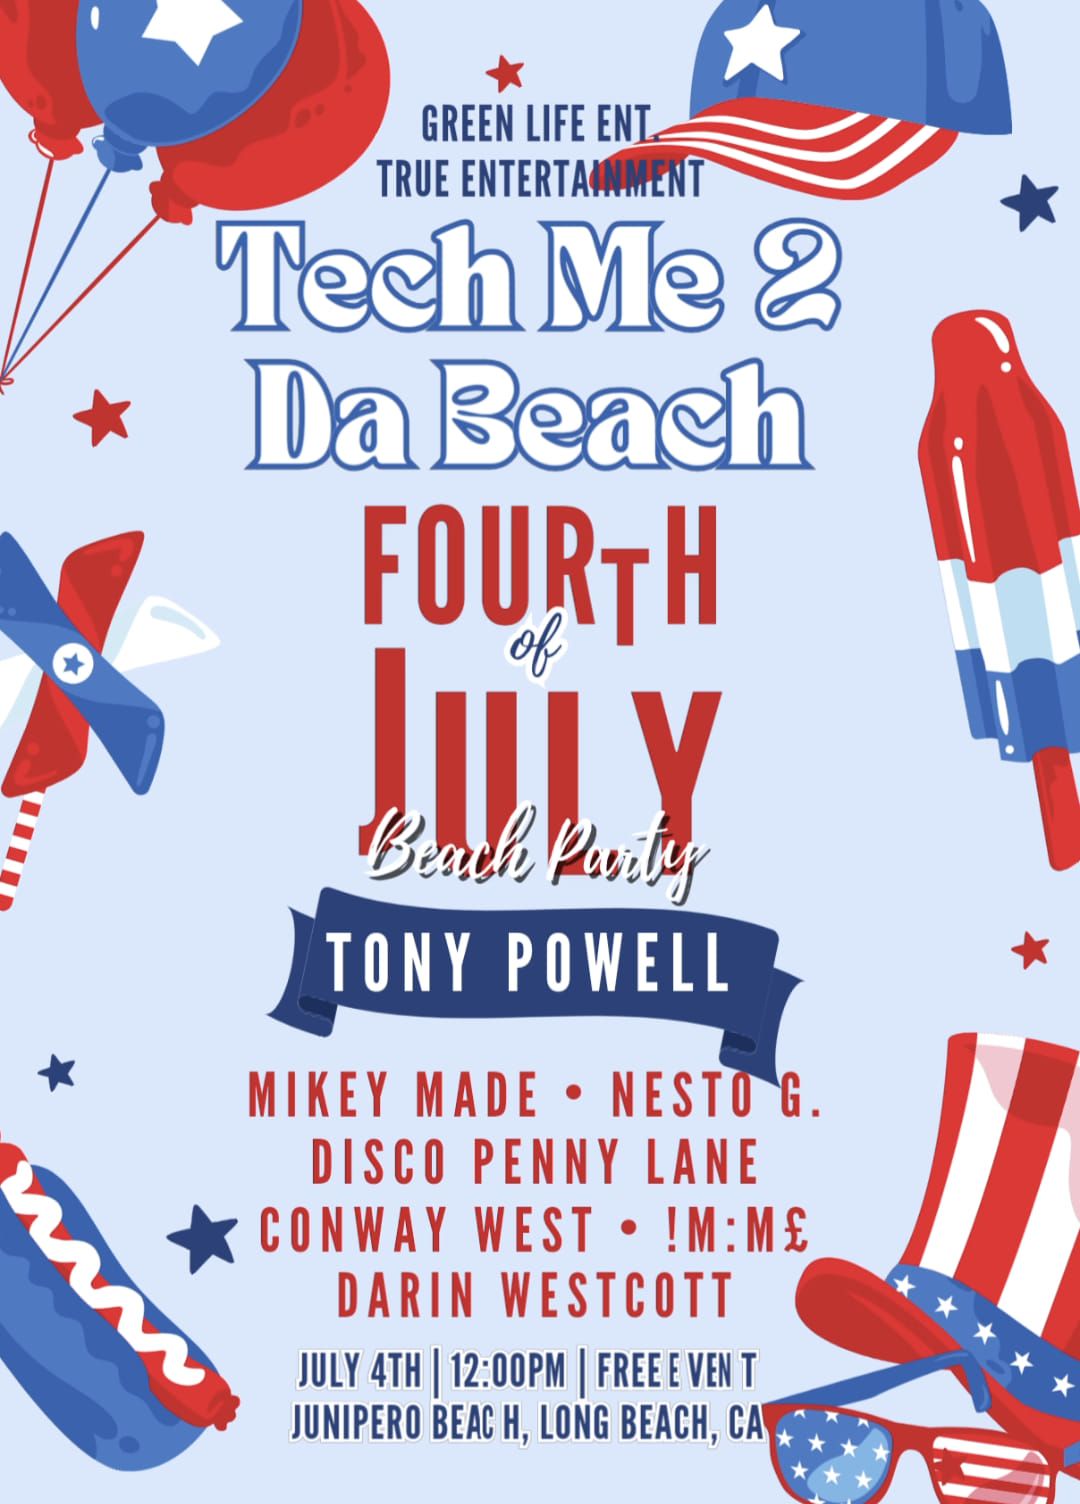 TECH ME 2 DA BEACH | INDEPEN-DANCE DAY | TONY POWELL & FRIENDS